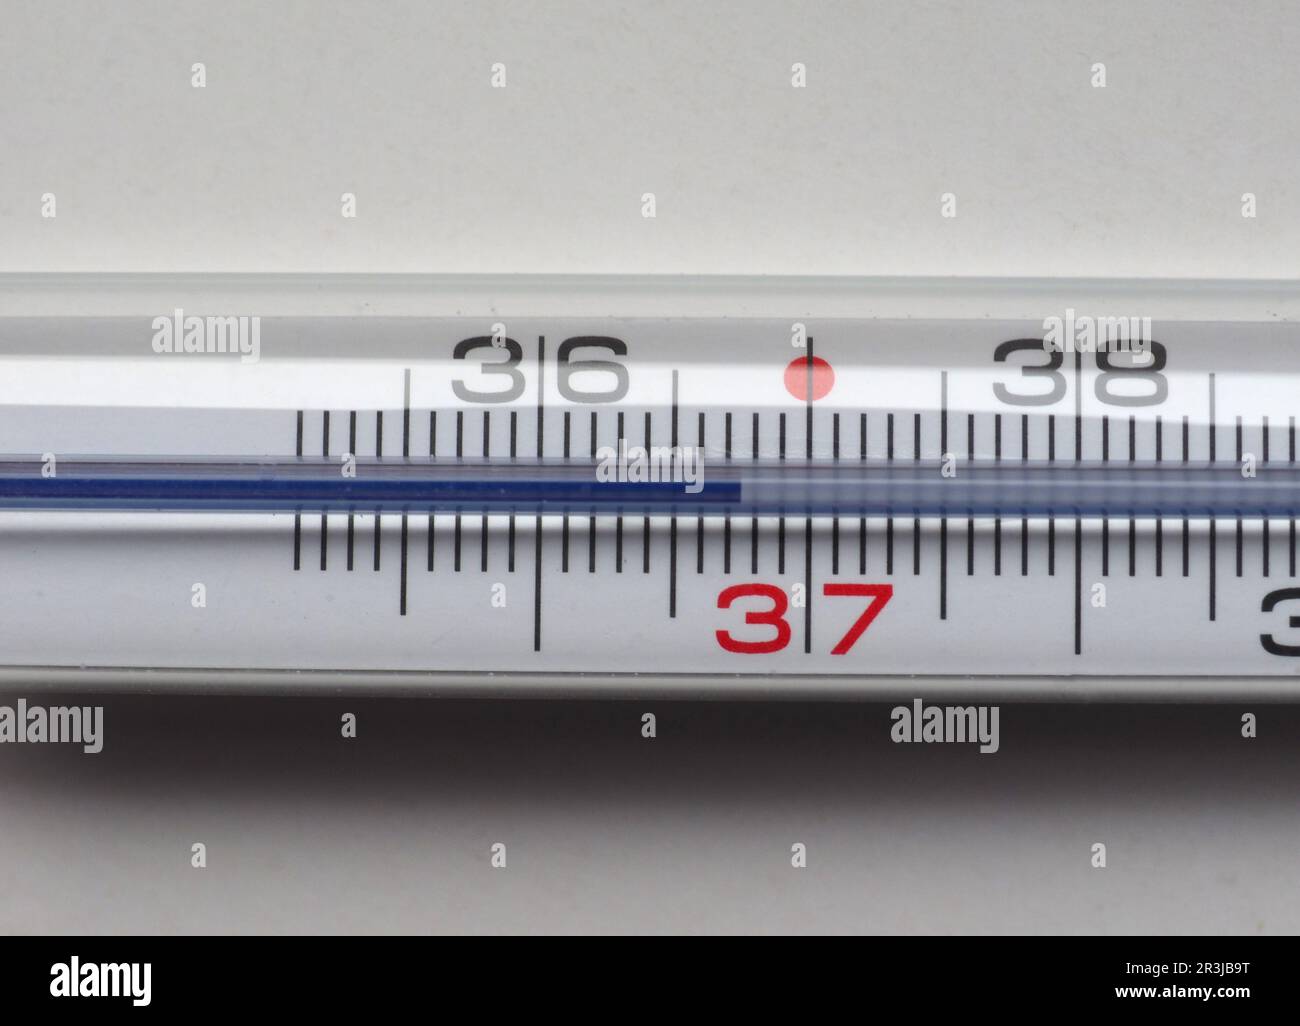 https://c8.alamy.com/comp/2R3JB9T/body-temperature-thermometer-2R3JB9T.jpg